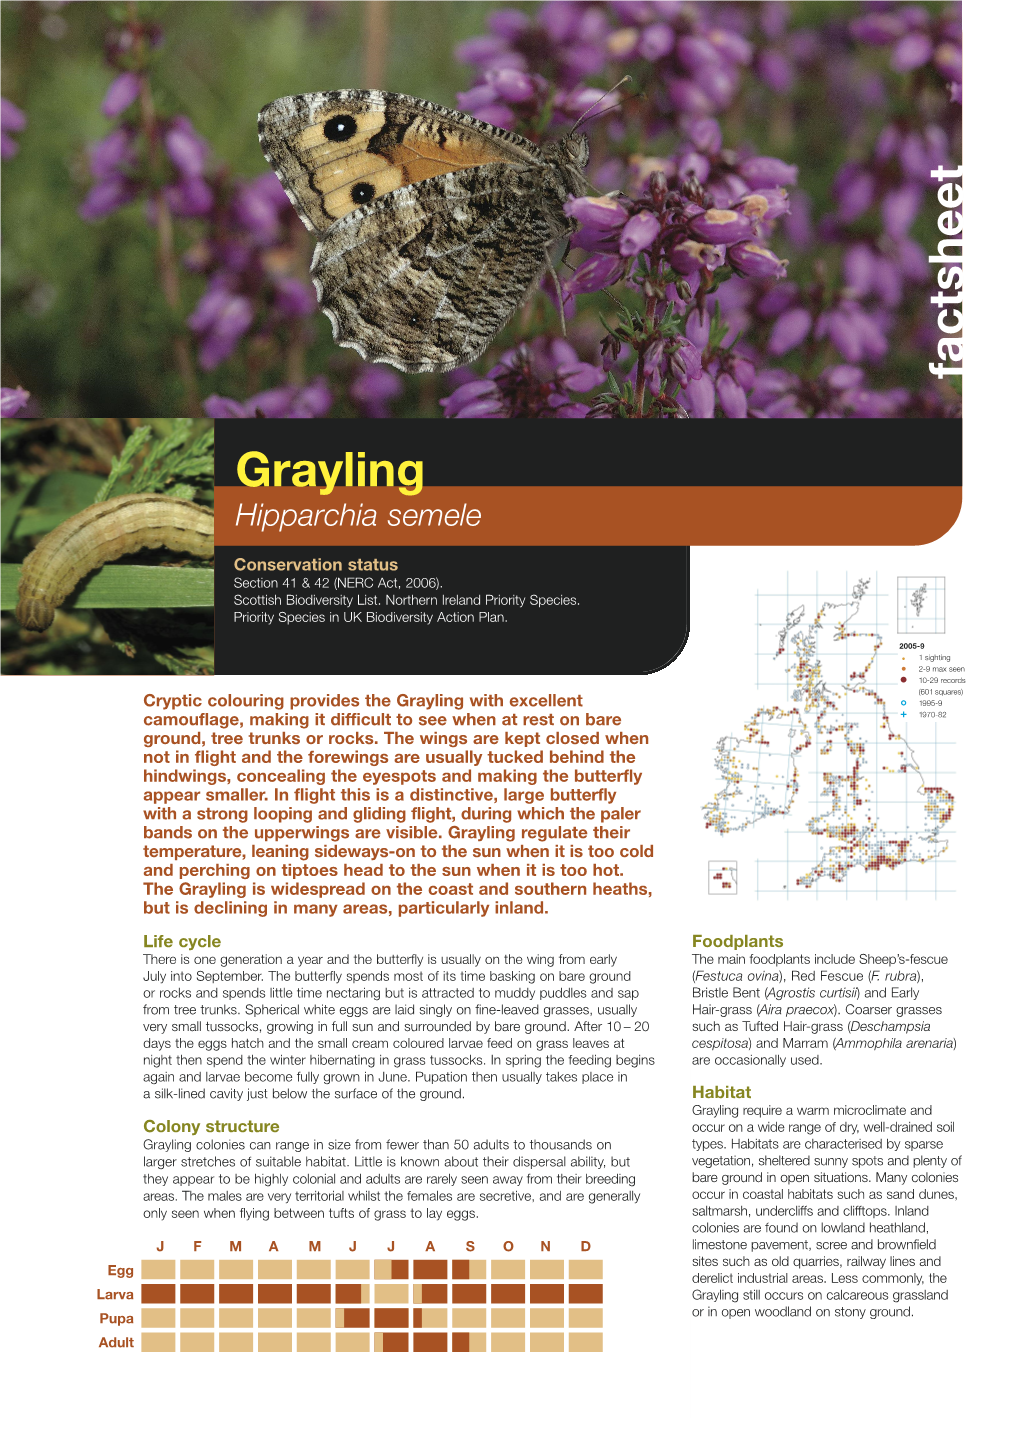 Grayling Species Factsheet